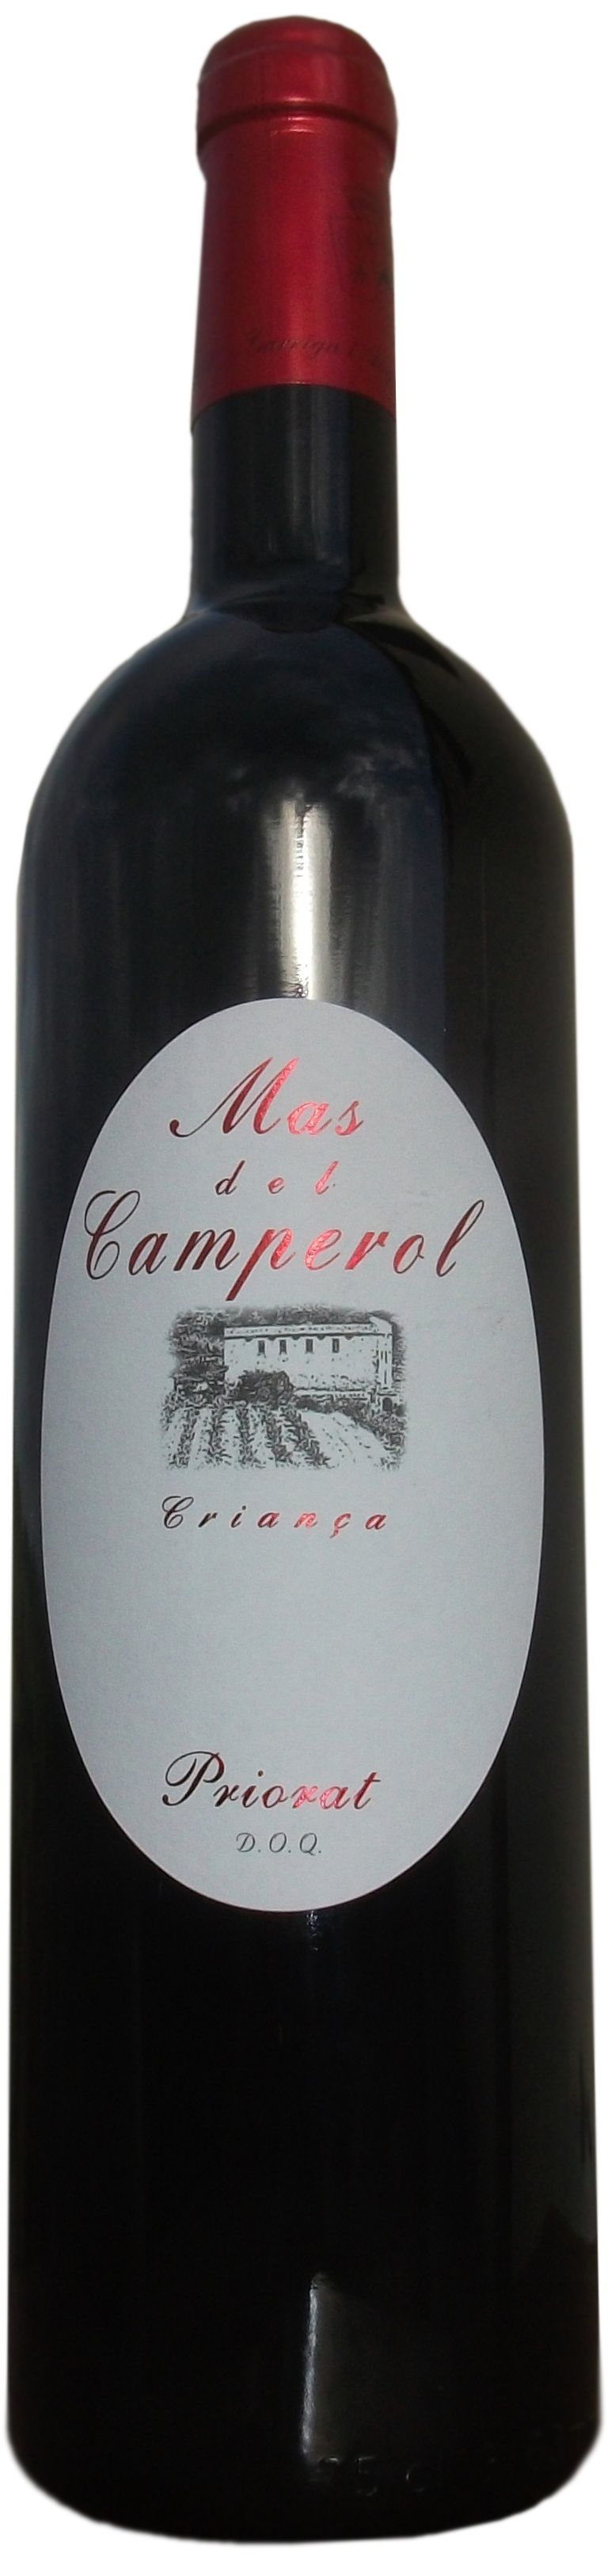 Mas Garrian, Mas Del Camperol, 2004